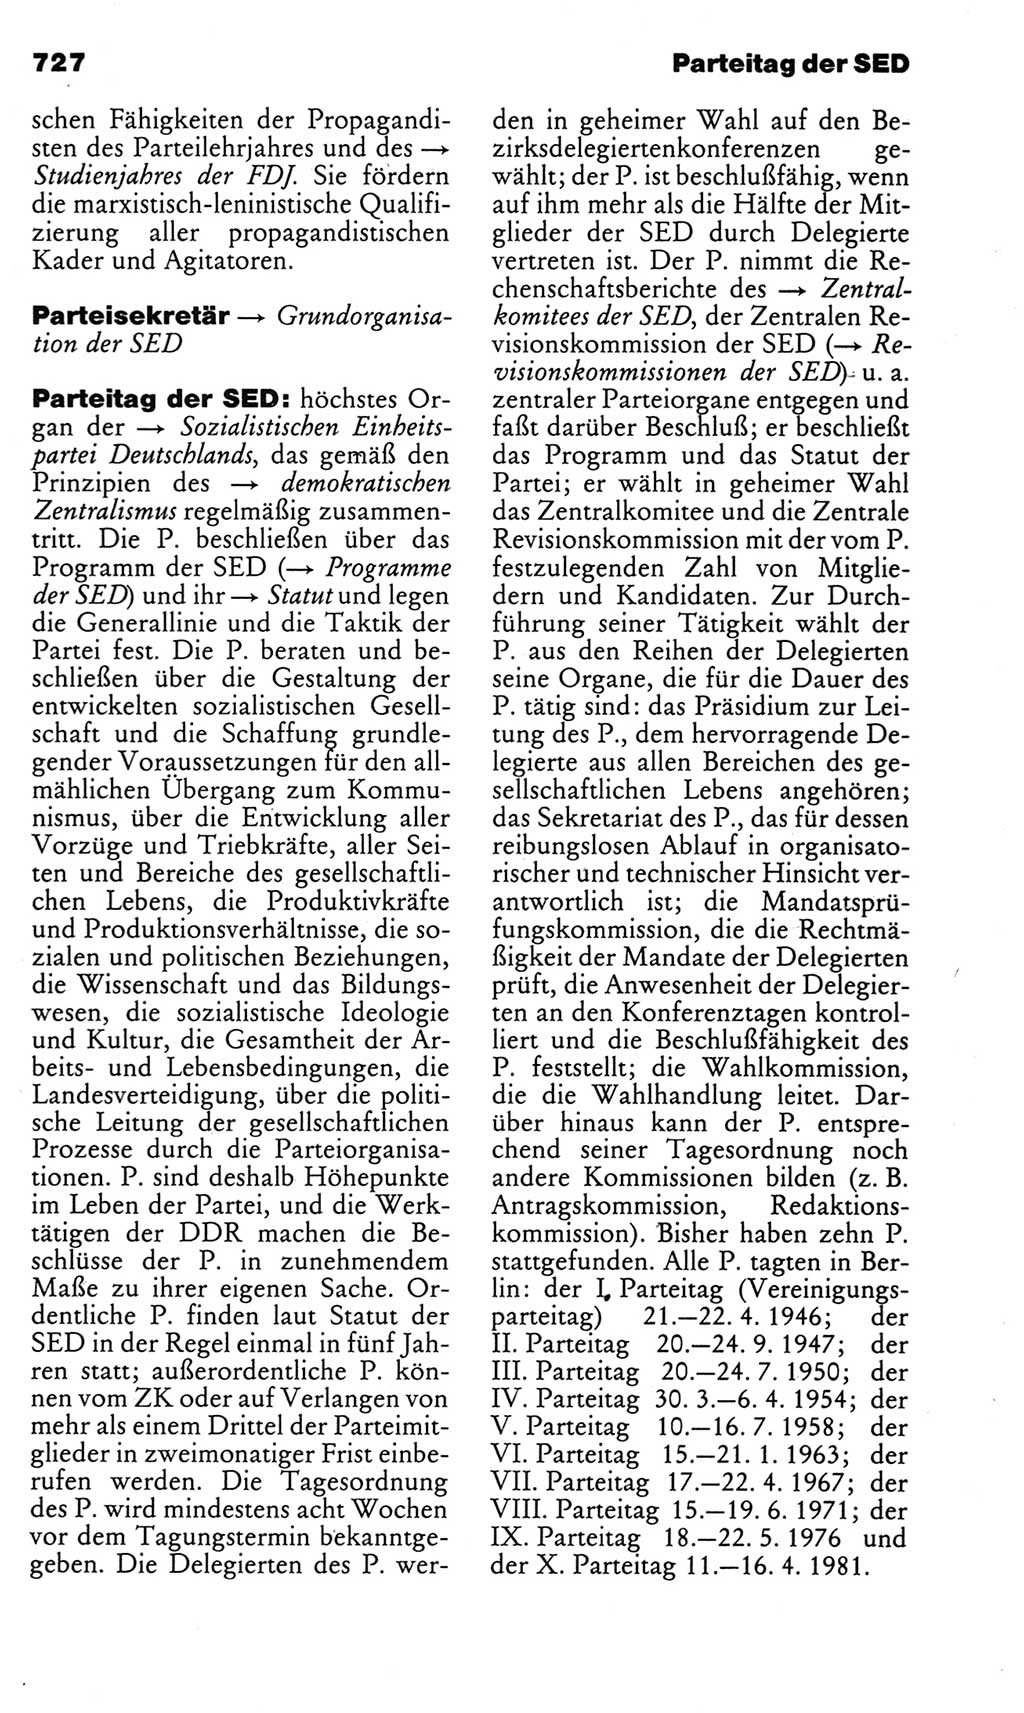 Kleines politisches Wörterbuch [Deutsche Demokratische Republik (DDR)] 1983, Seite 727 (Kl. pol. Wb. DDR 1983, S. 727)